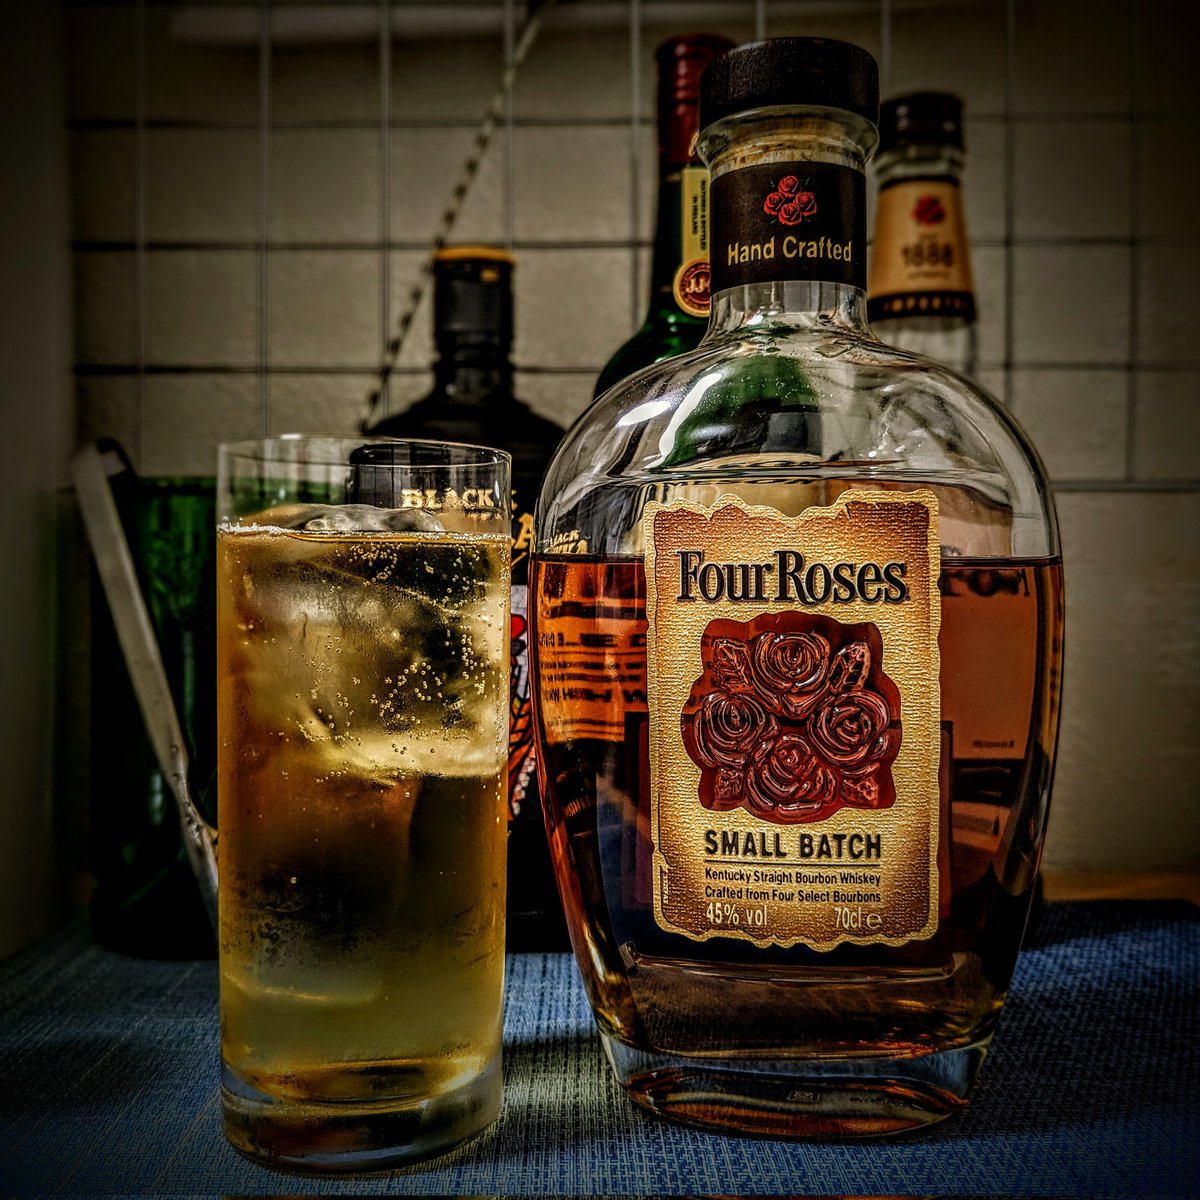 フォアローゼズ スモールバッチ、ハイボールで頂きます。
フォアローゼスじゃないの？
ガンズ・アンド・ローゼスじゃないの？
#FourRoses #SmallBatch #BourbonWhiskey #AmericanWhiskey #Whiskey #WhiskeySoda